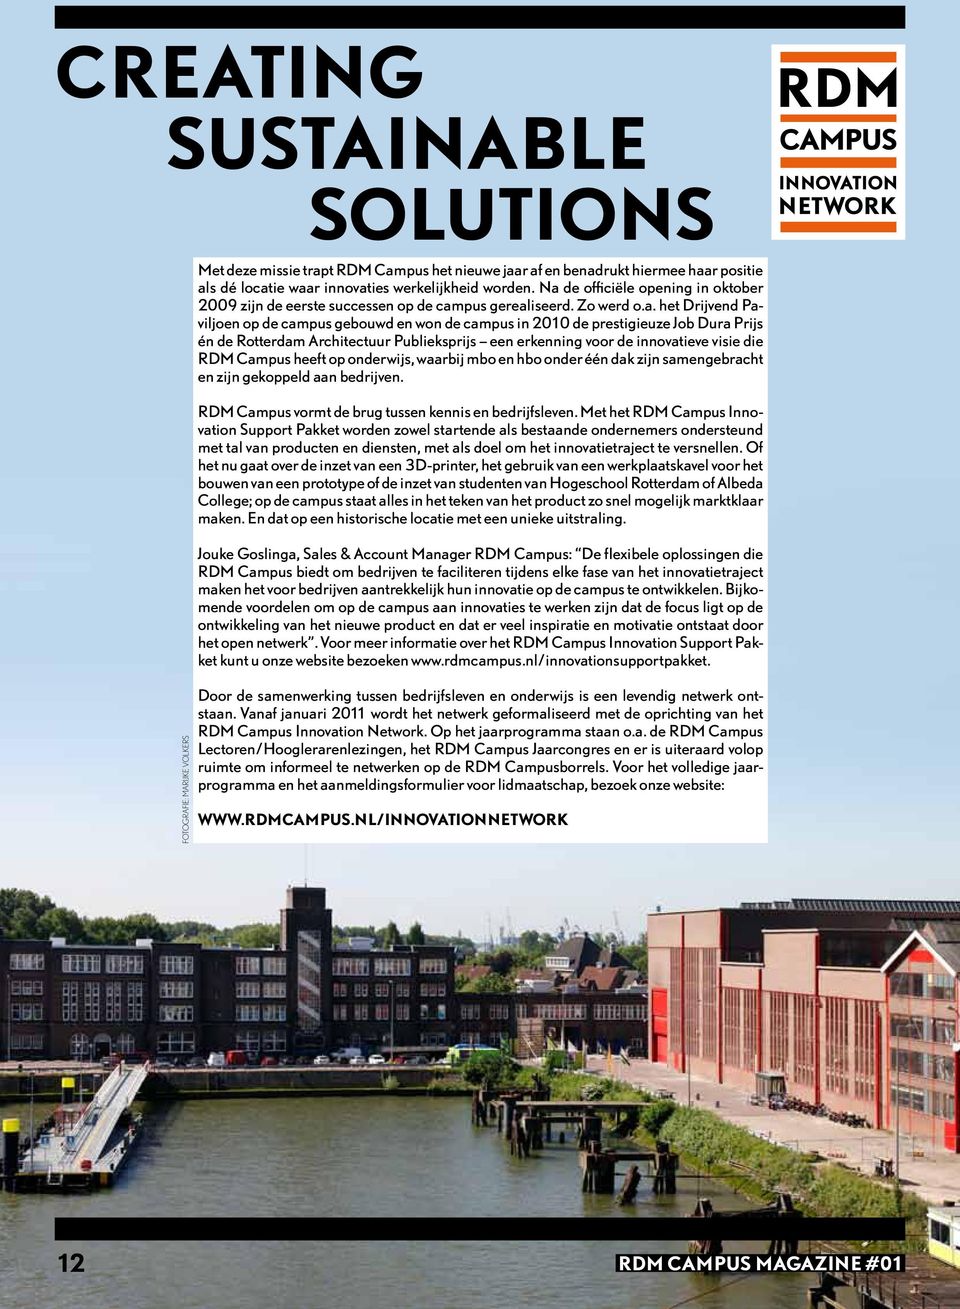 Prijs én de Rotterdam Architectuur Publieksprijs een erkenning voor de innovatieve visie die RDM Campus heeft op onderwijs, waarbij mbo en hbo onder één dak zijn samengebracht en zijn gekoppeld aan